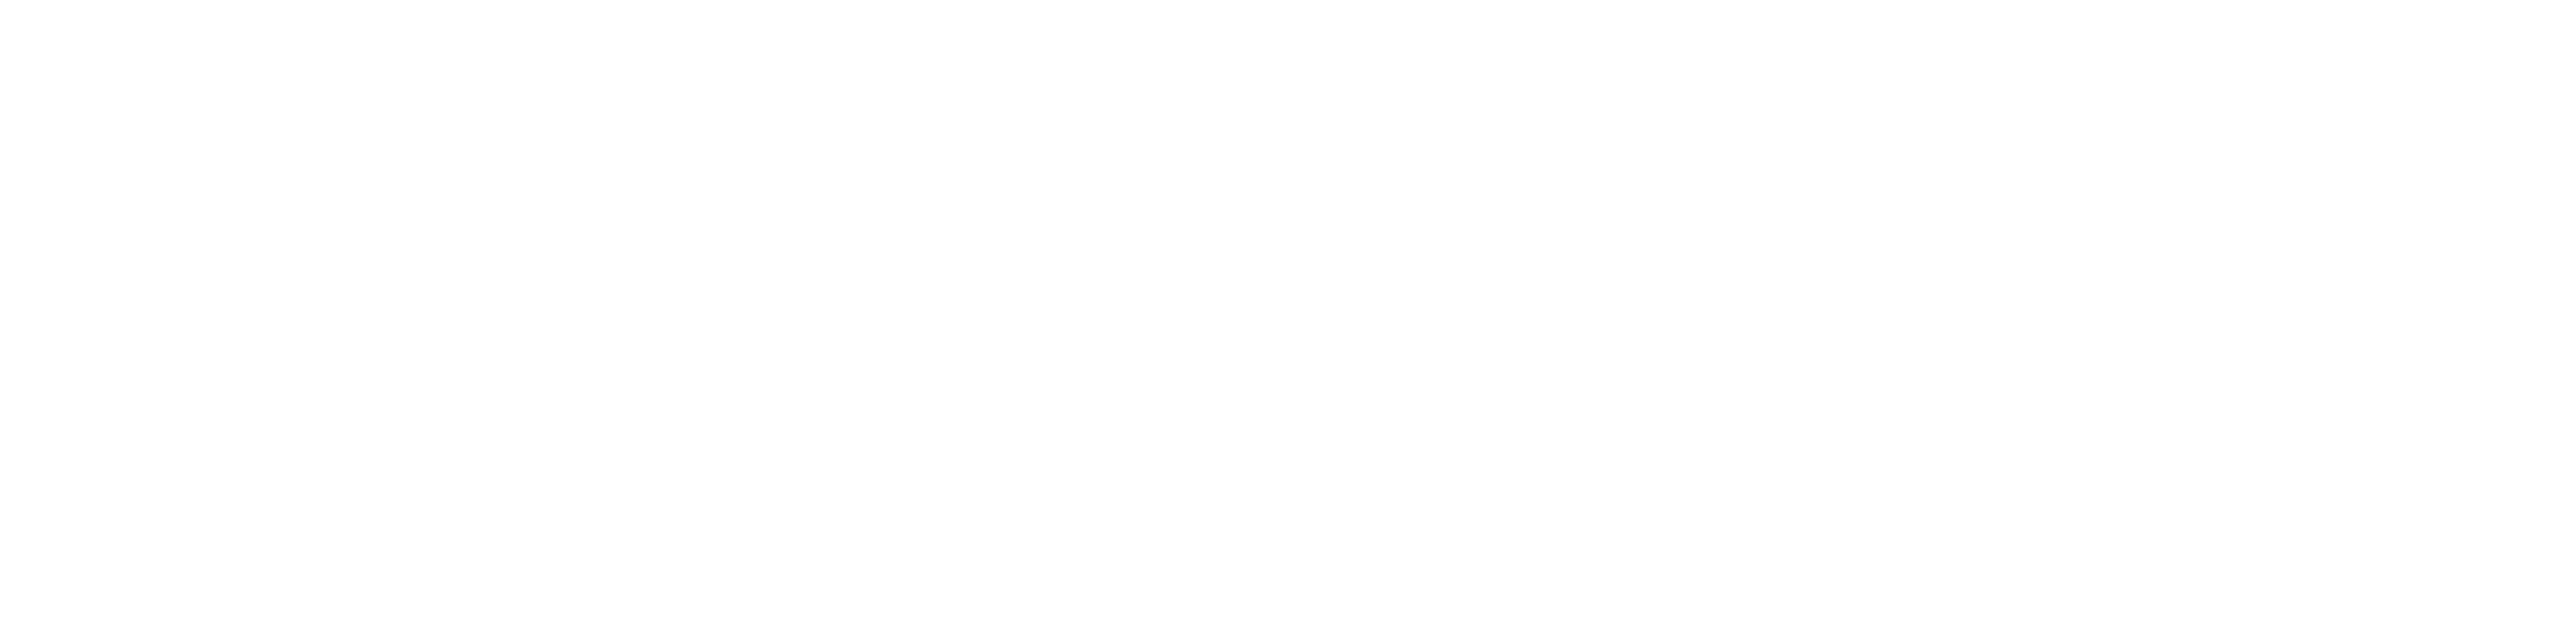 P&M-LOGO